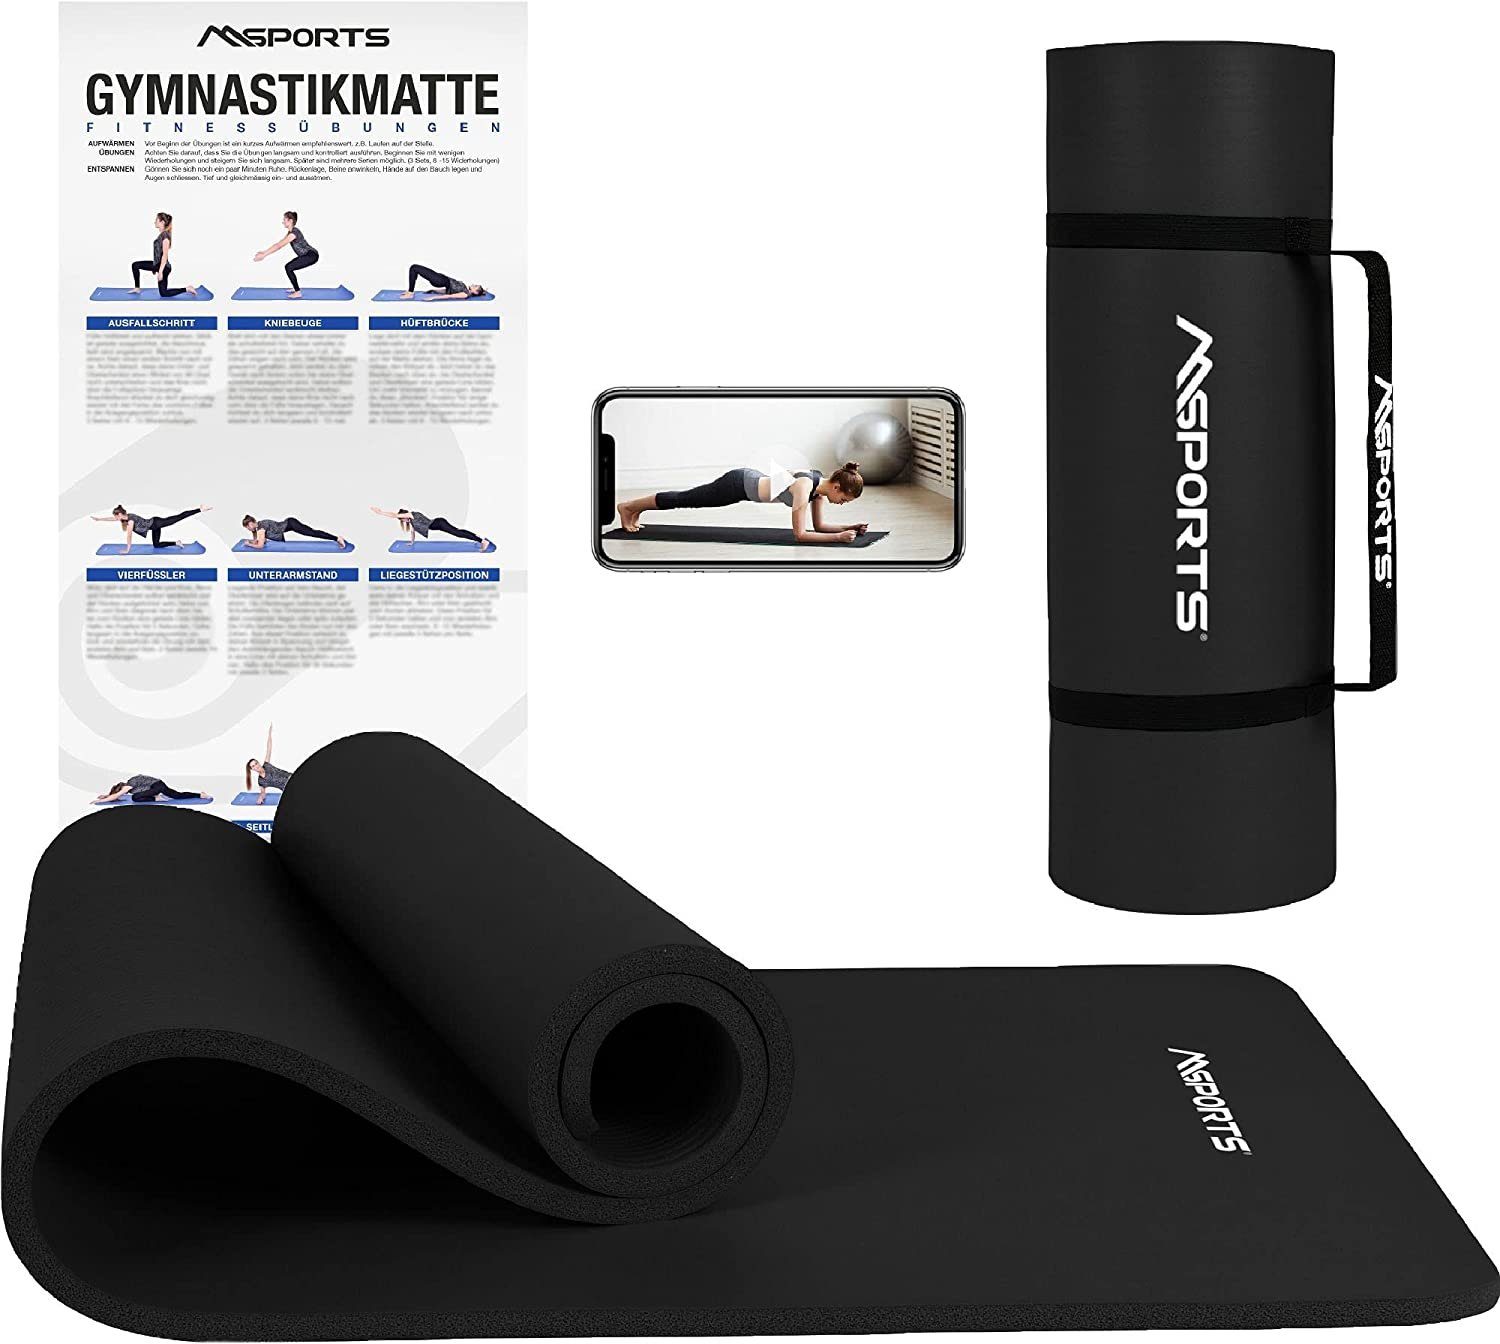 Fidusport Yogamatte aus TPE Gymnastikmatte rutschfest für Fitness Pilates & Gymnastik Matte mit Tragegurt Turnmatte Sportmatte Bodenmatte Maße 183cmx61cm